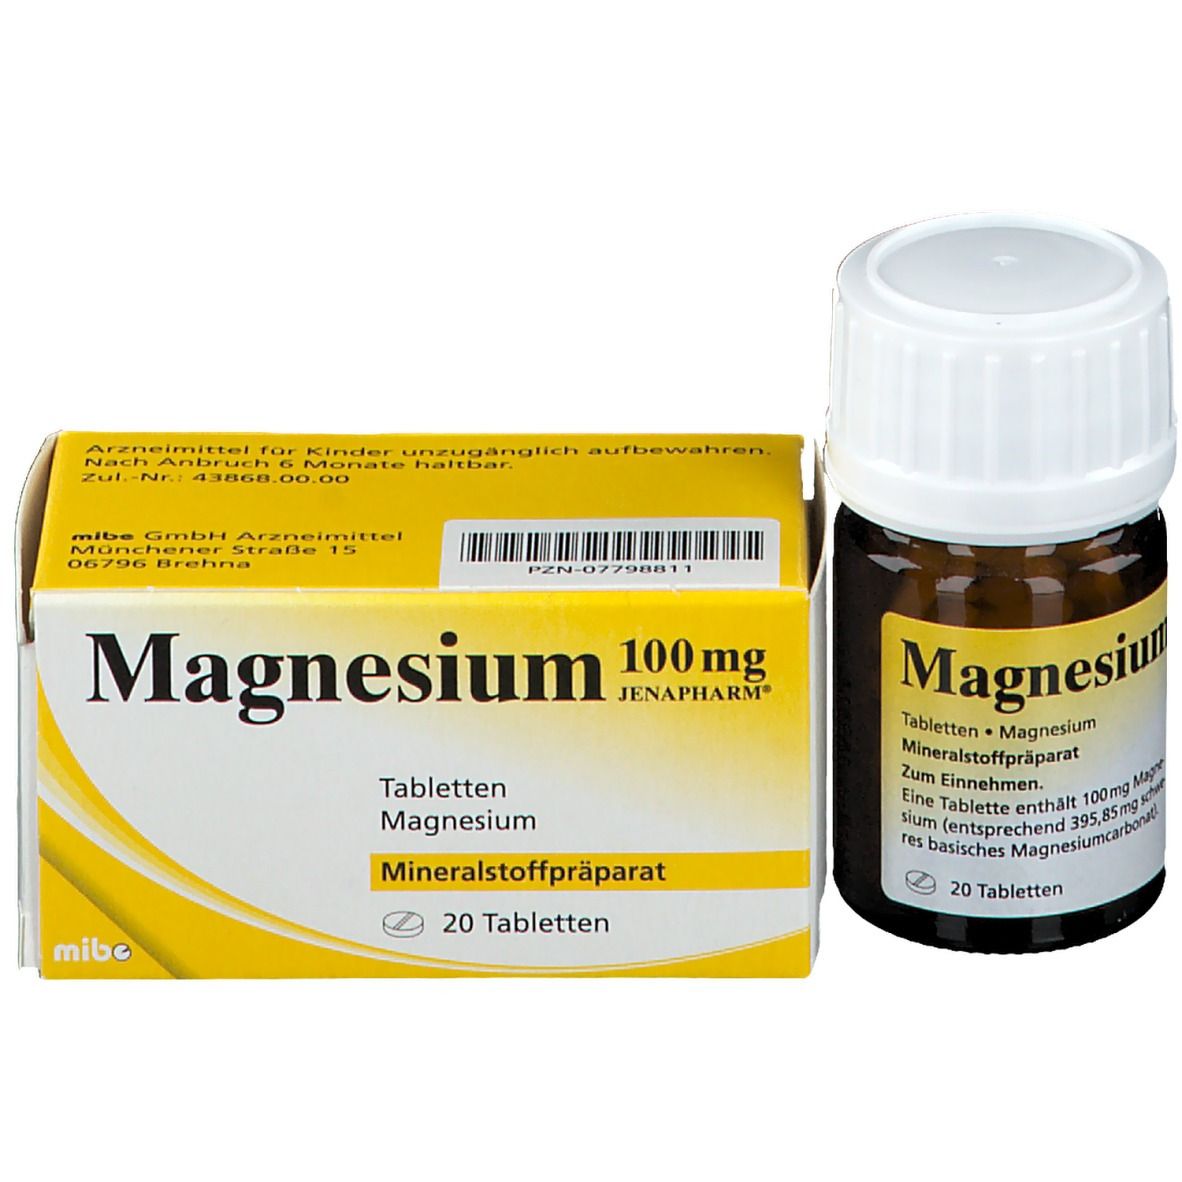 Magnesium 100mg JENAPHARM®